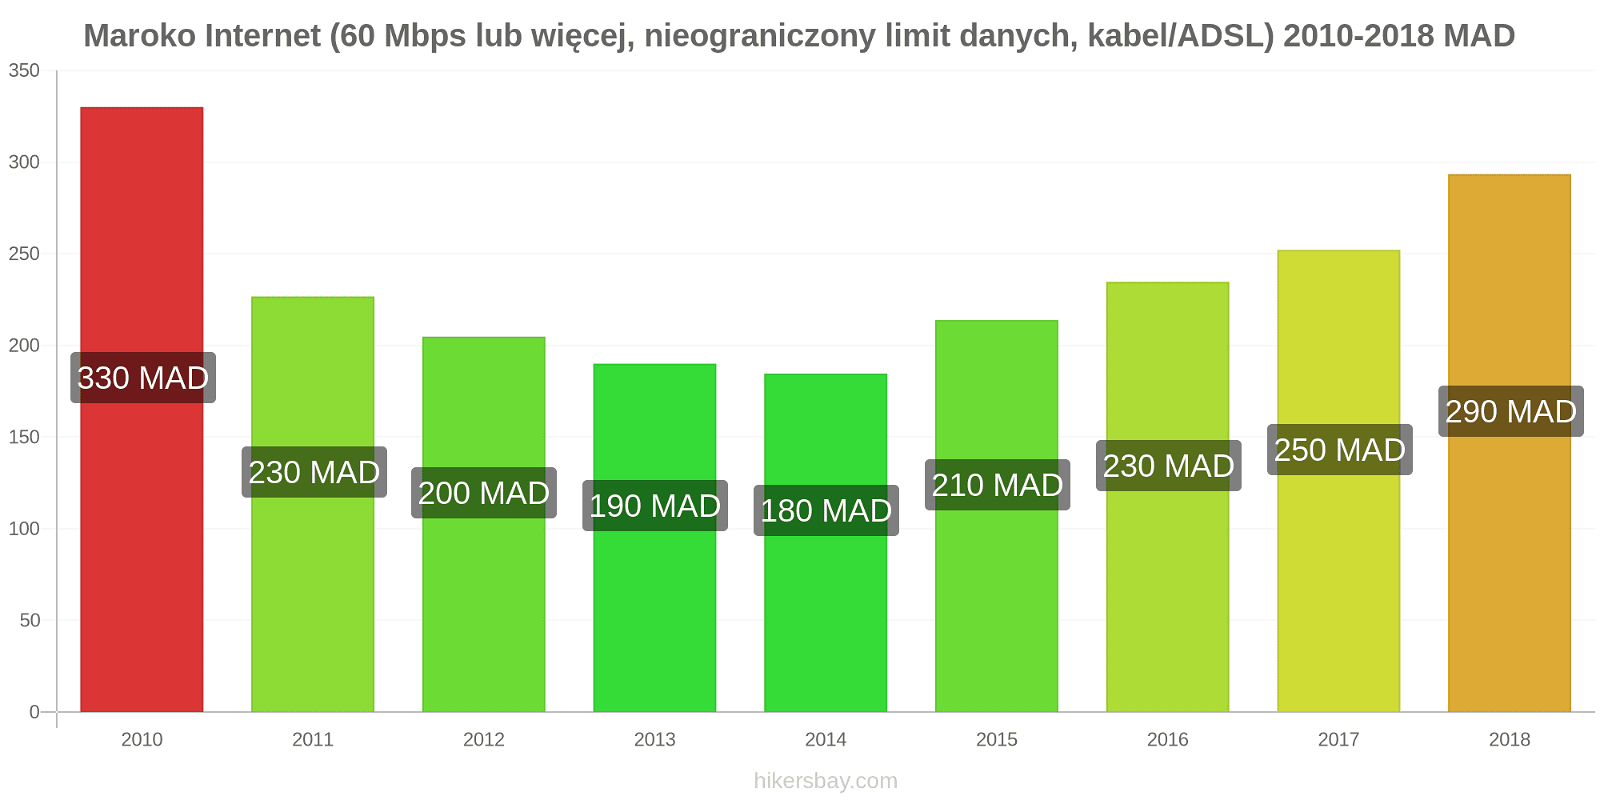 Maroko zmiany cen Internet (60 Mbps lub więcej, nieograniczony limit danych, kabel/ADSL) hikersbay.com